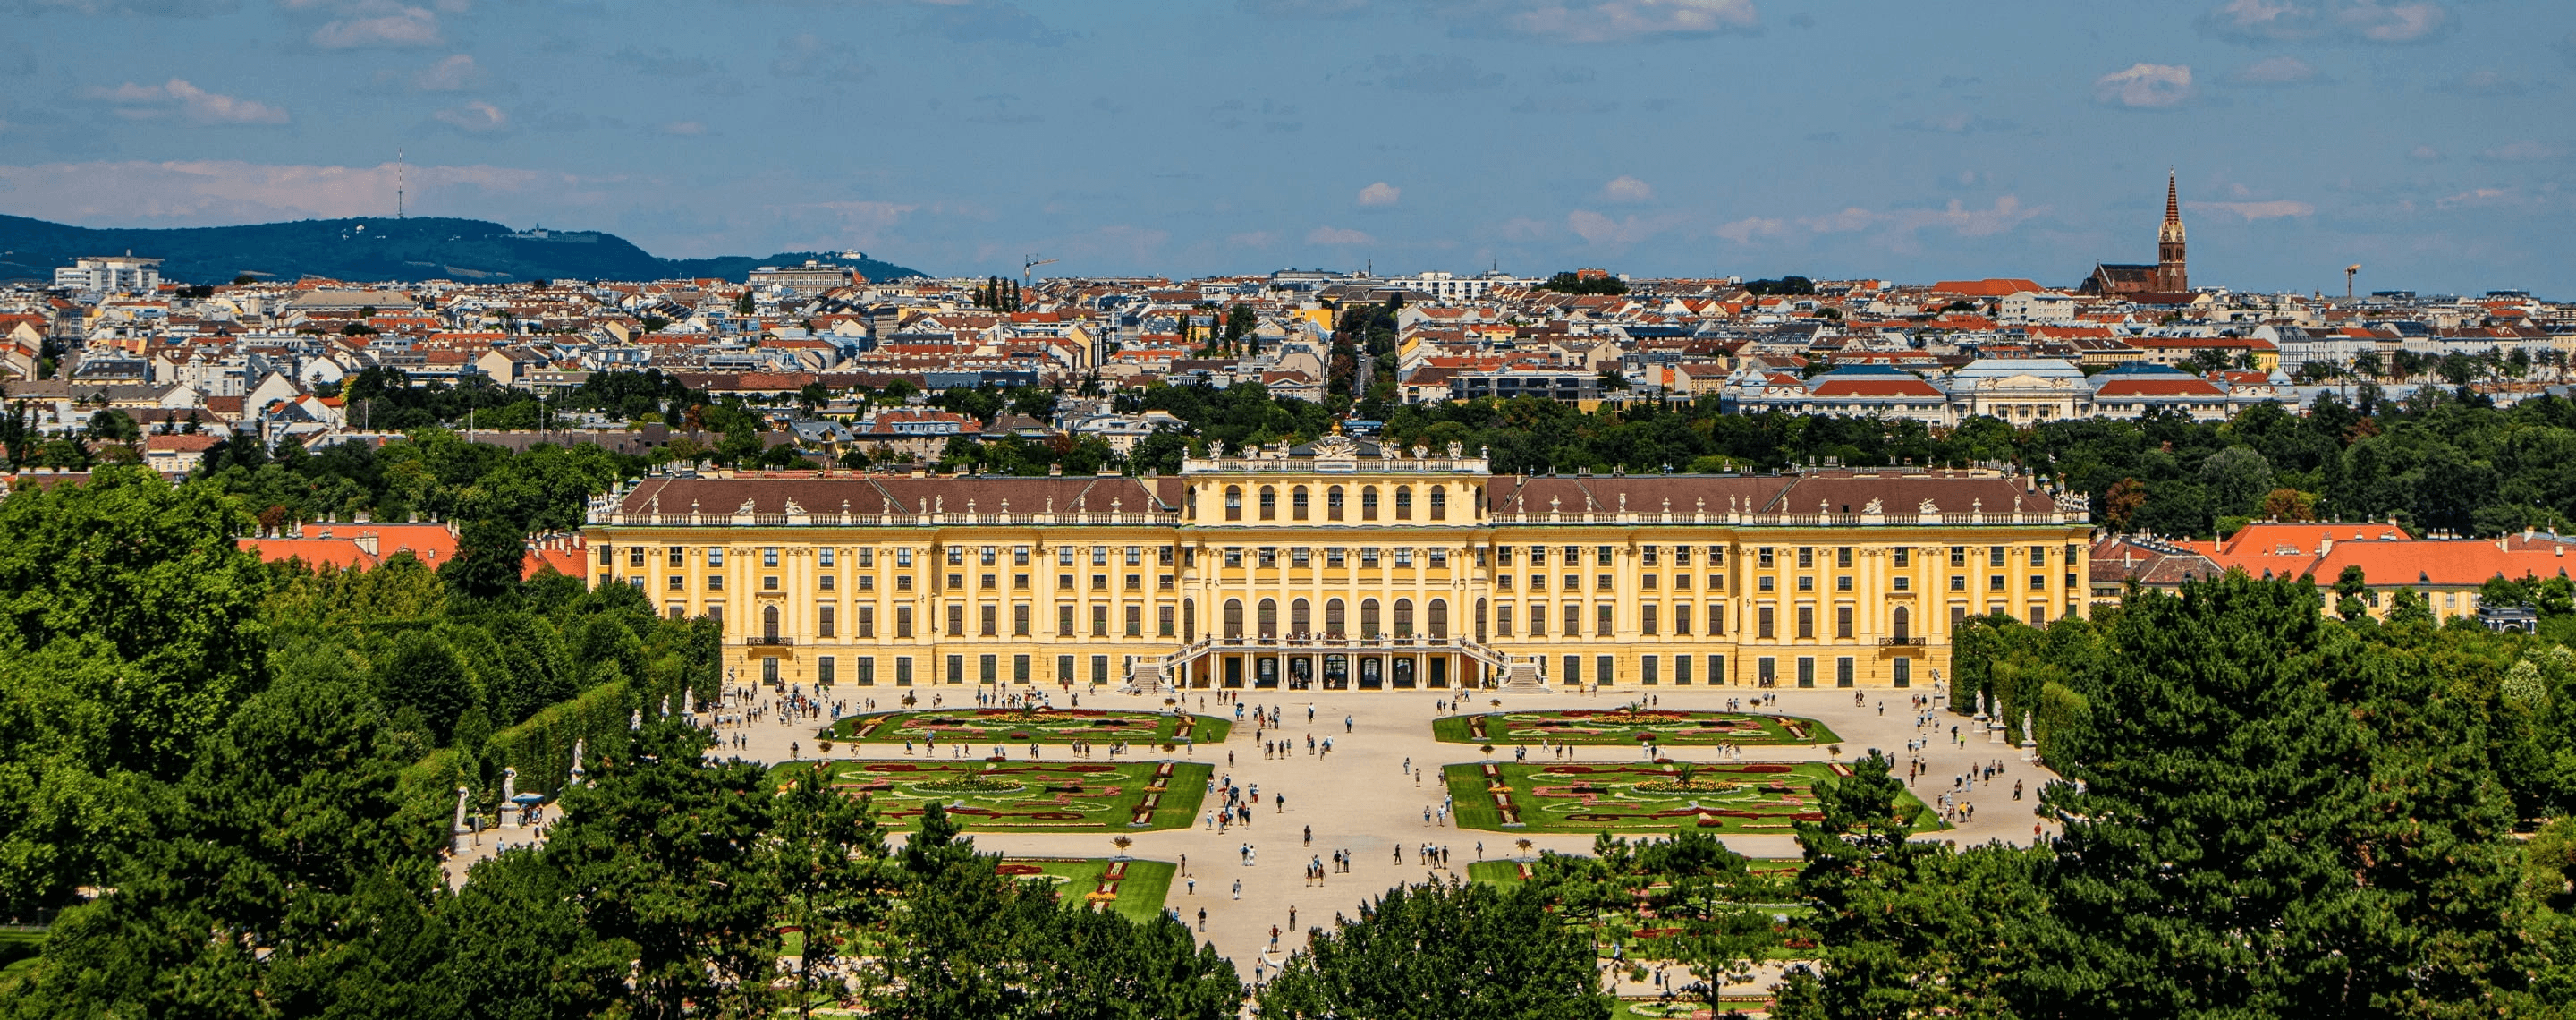 Panorama von Wien mit Schloss Schönbrunn